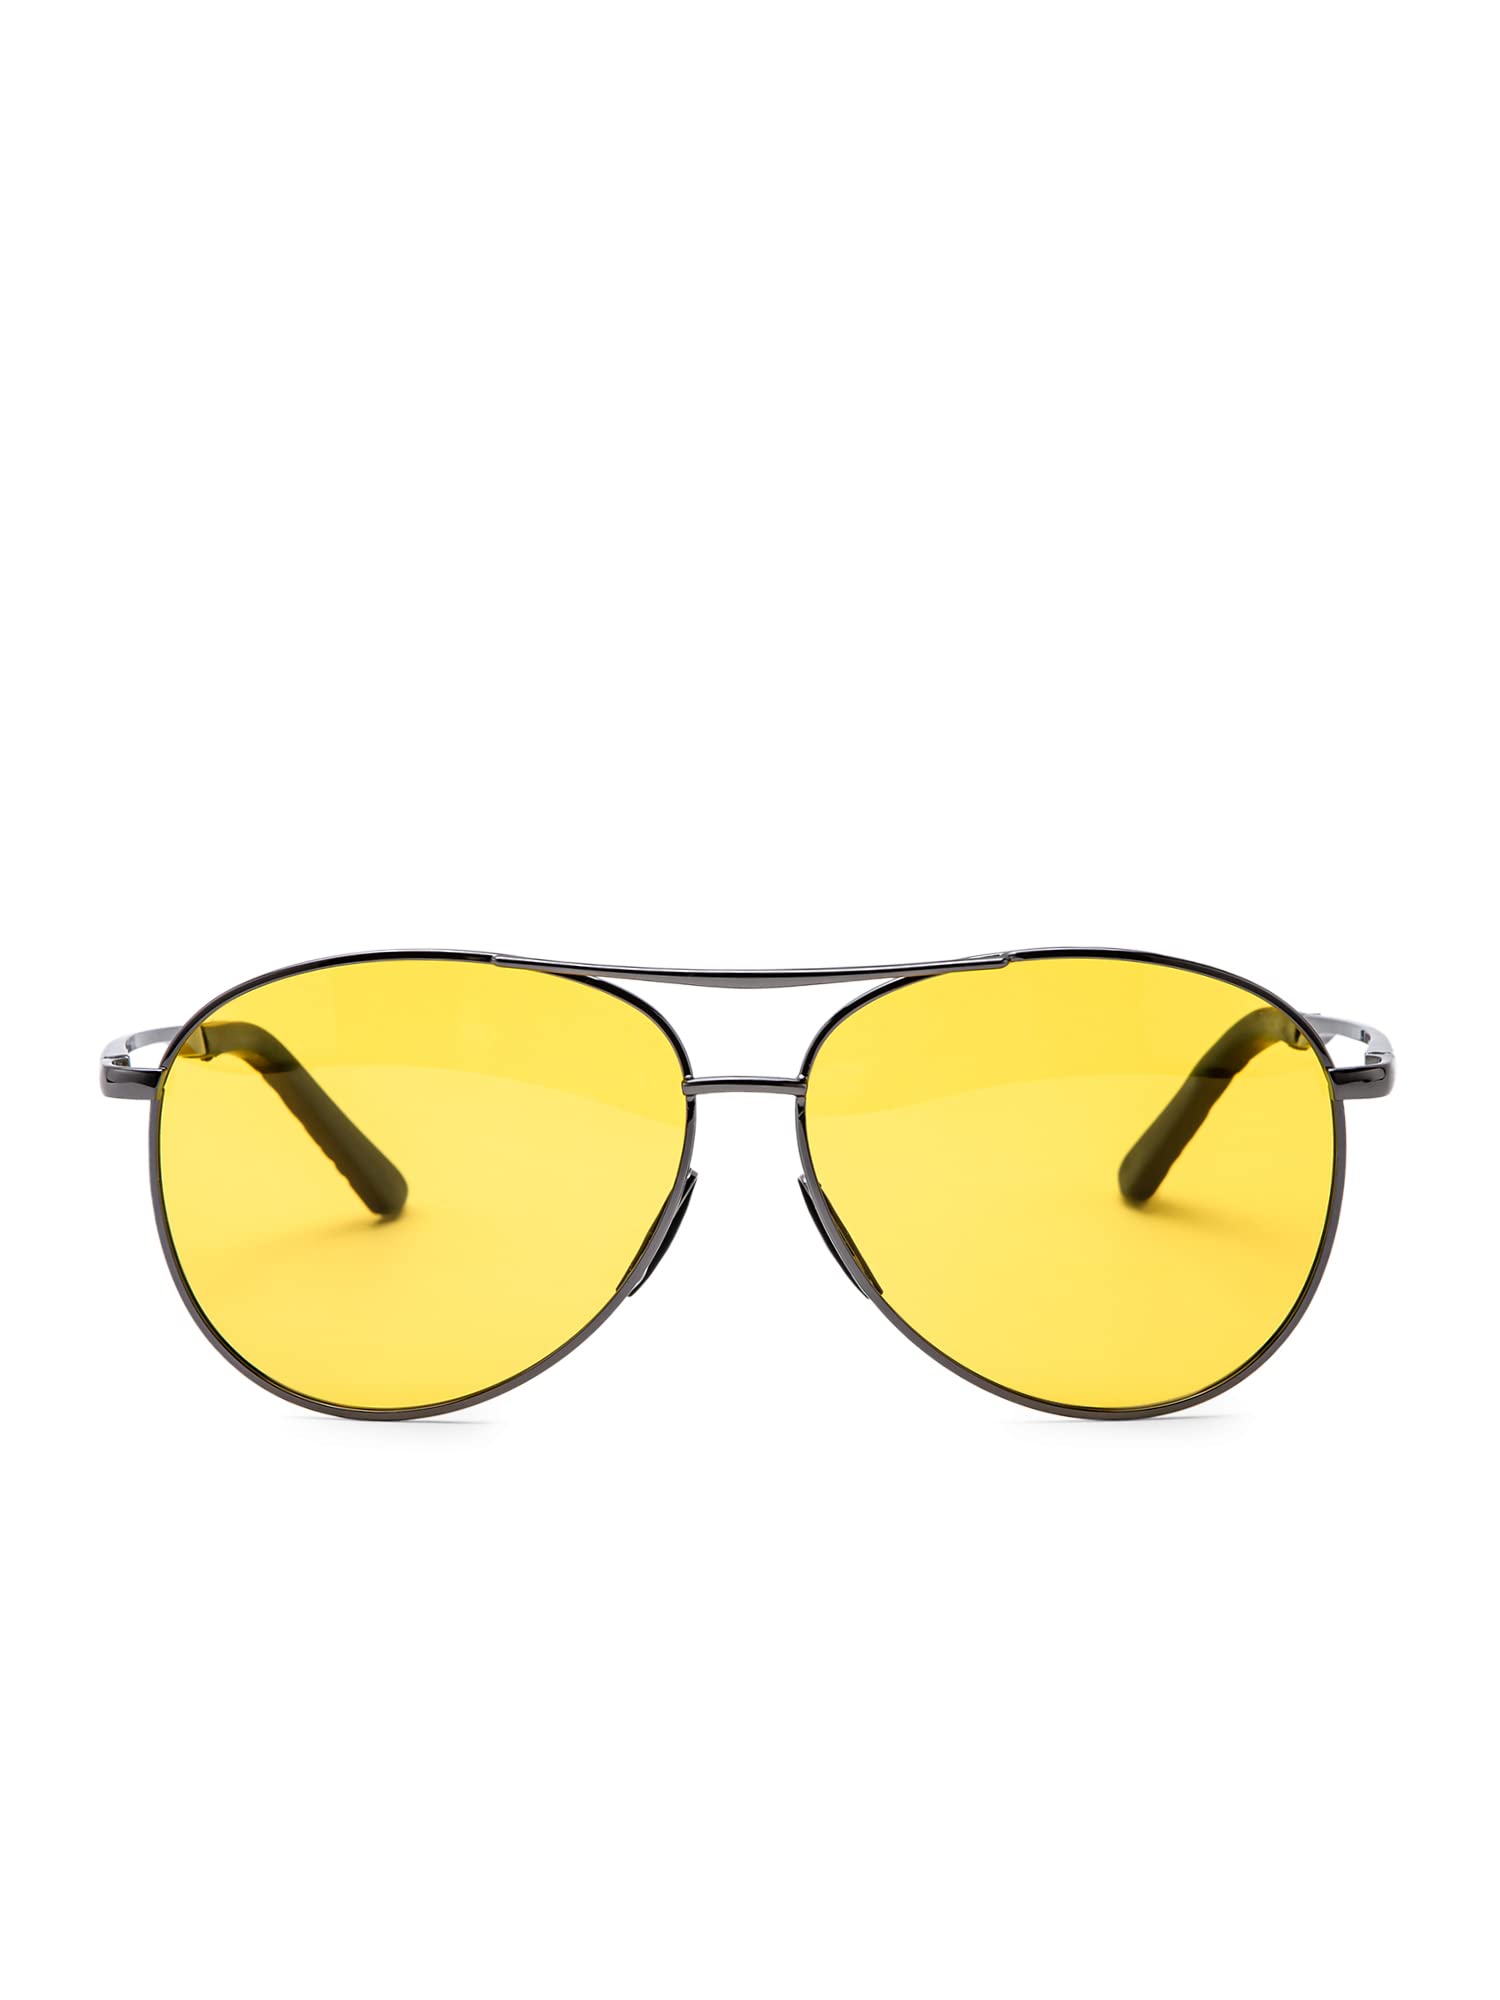 Intellilens Aviator Night Driving Polarized & UV Protected Sunglasses For Men & Women | Goggles for Men & Women (59-18-141)